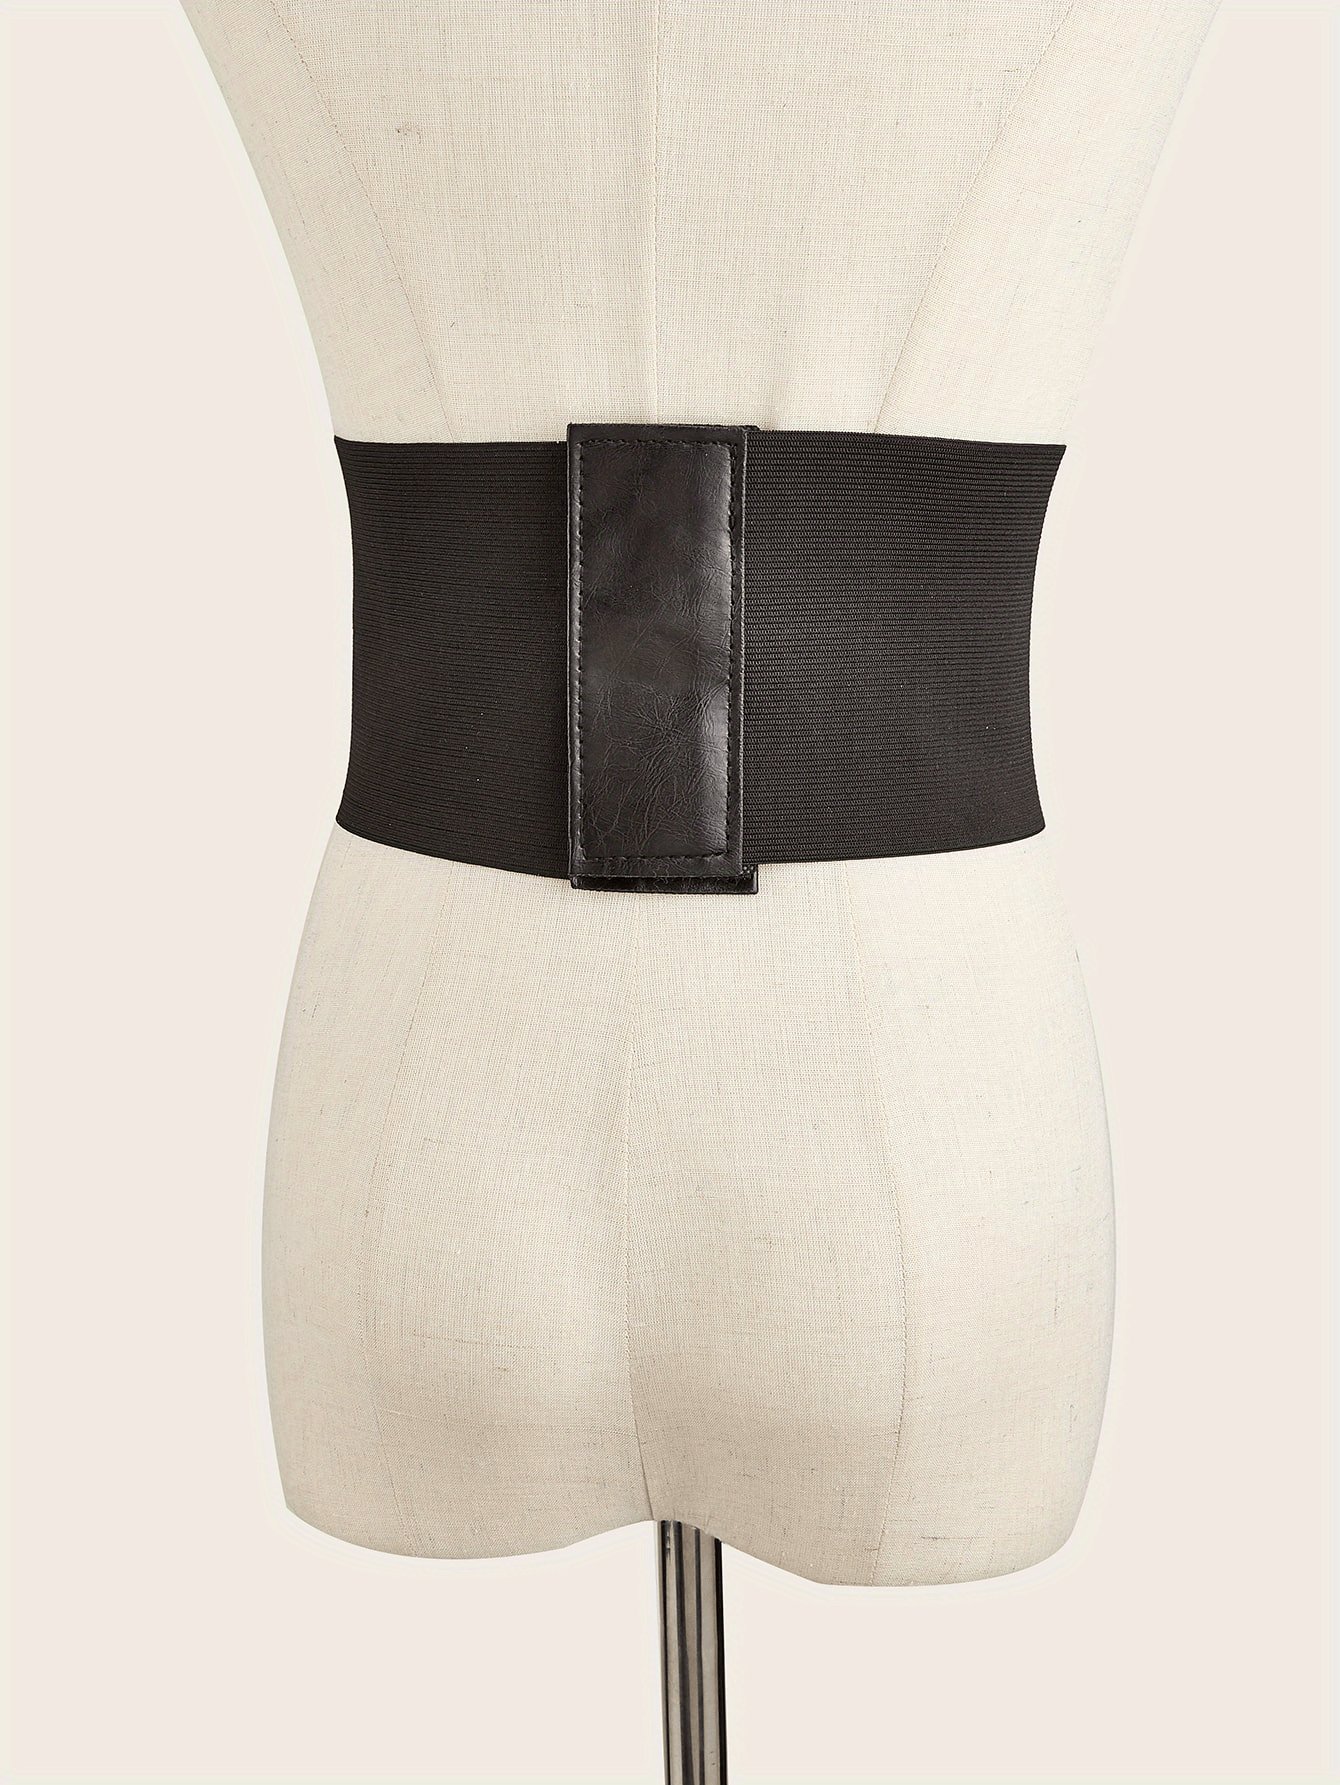 Mealah Women Girls Lace-up Cinch Belt Elastic Tied Corset Waist